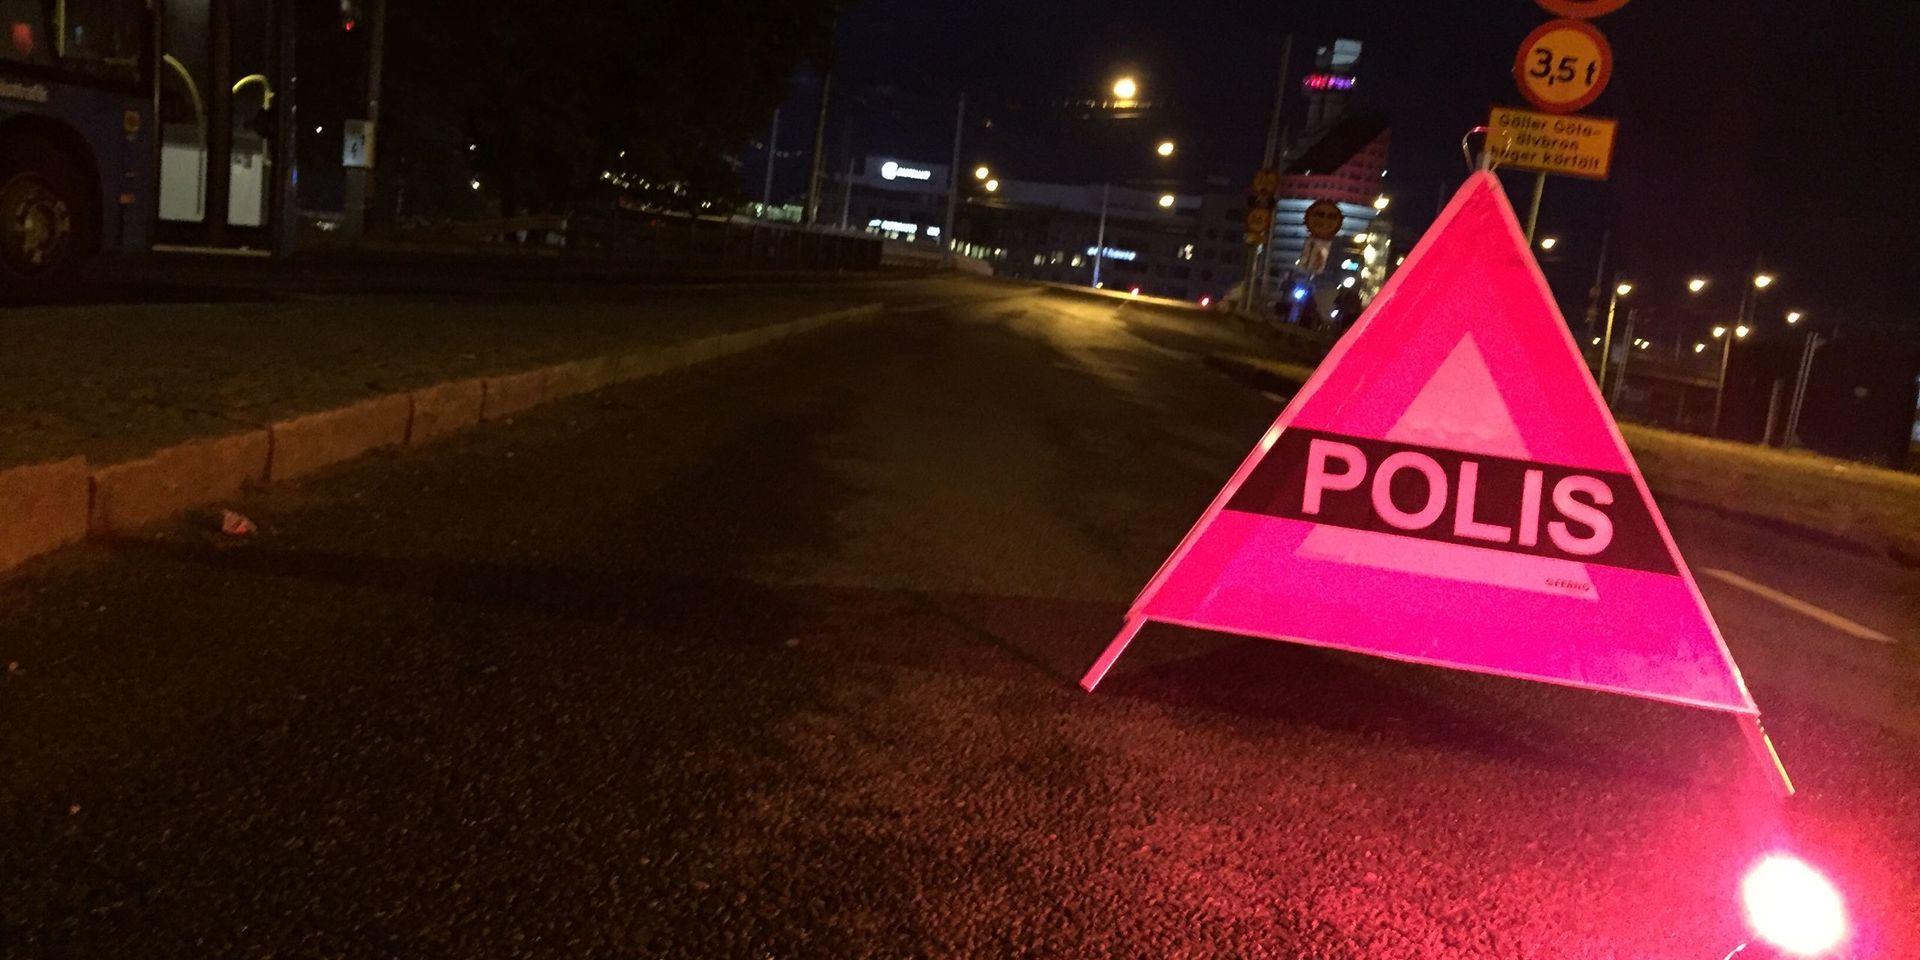 Polis stängde på tisdagskvällen av Götaälvbron efter en trafikolycka som följdes av elproblem.